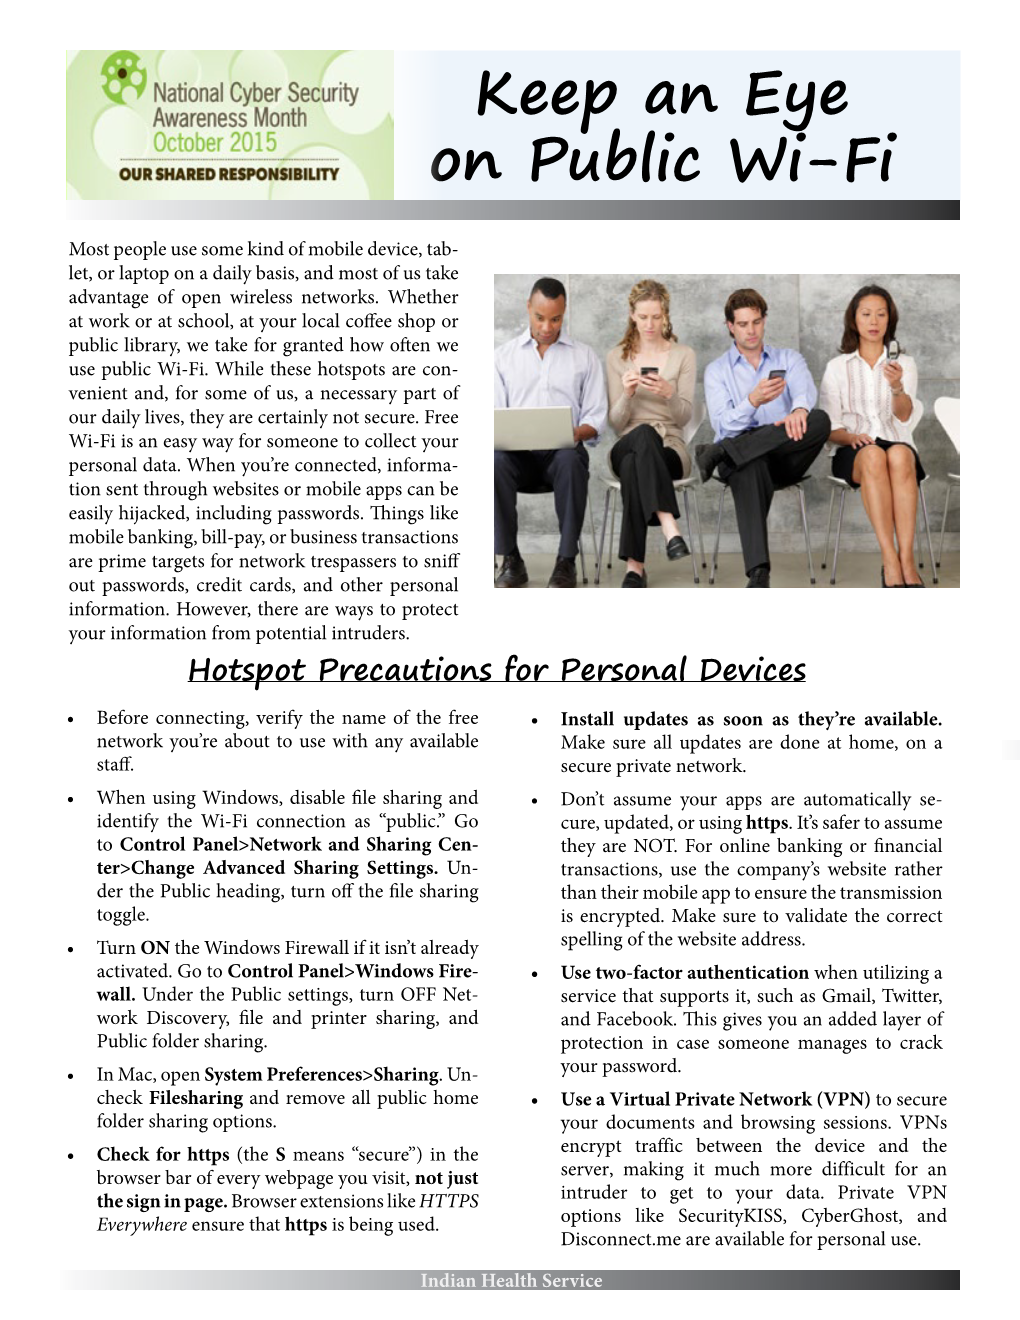 Keep an Eye on Public Wi-Fi